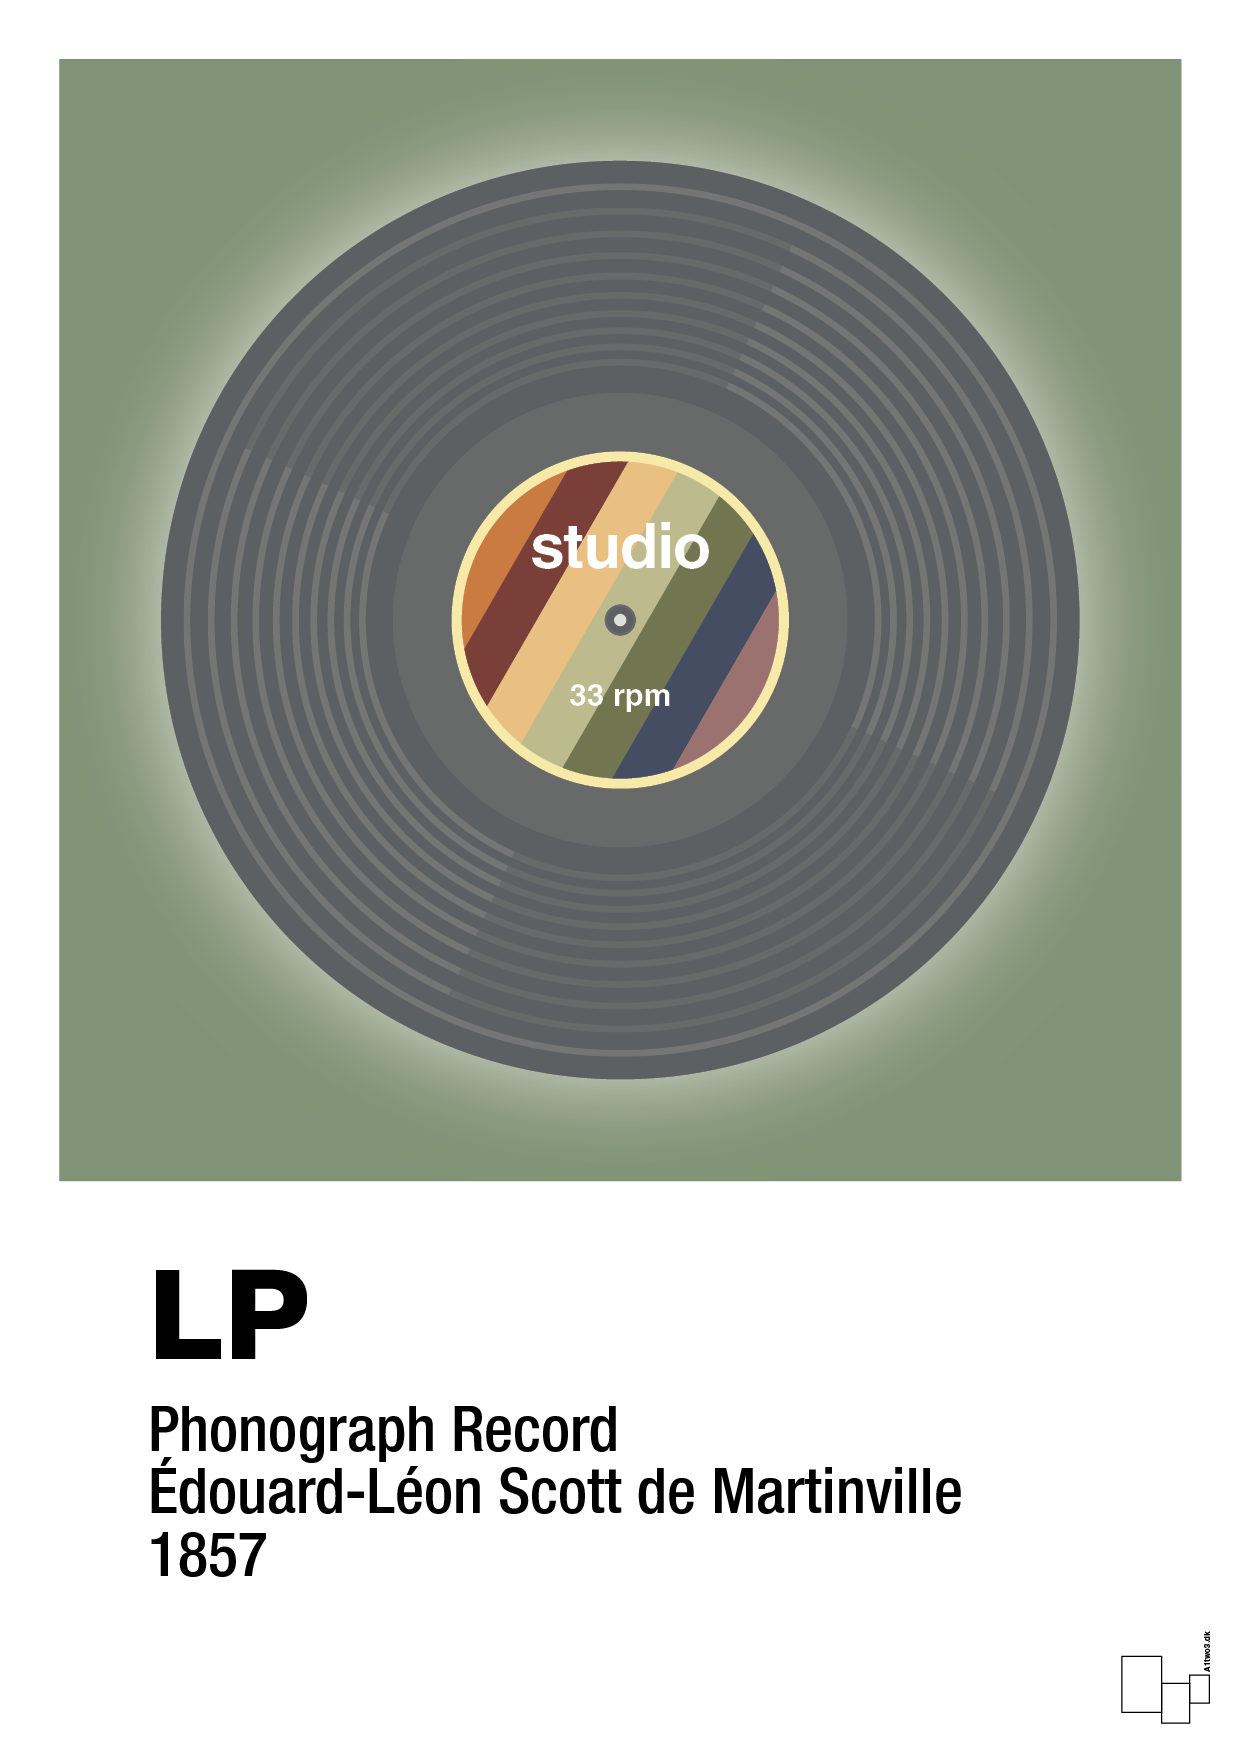 vinylplade 33rpm - Plakat med Grafik i Jade